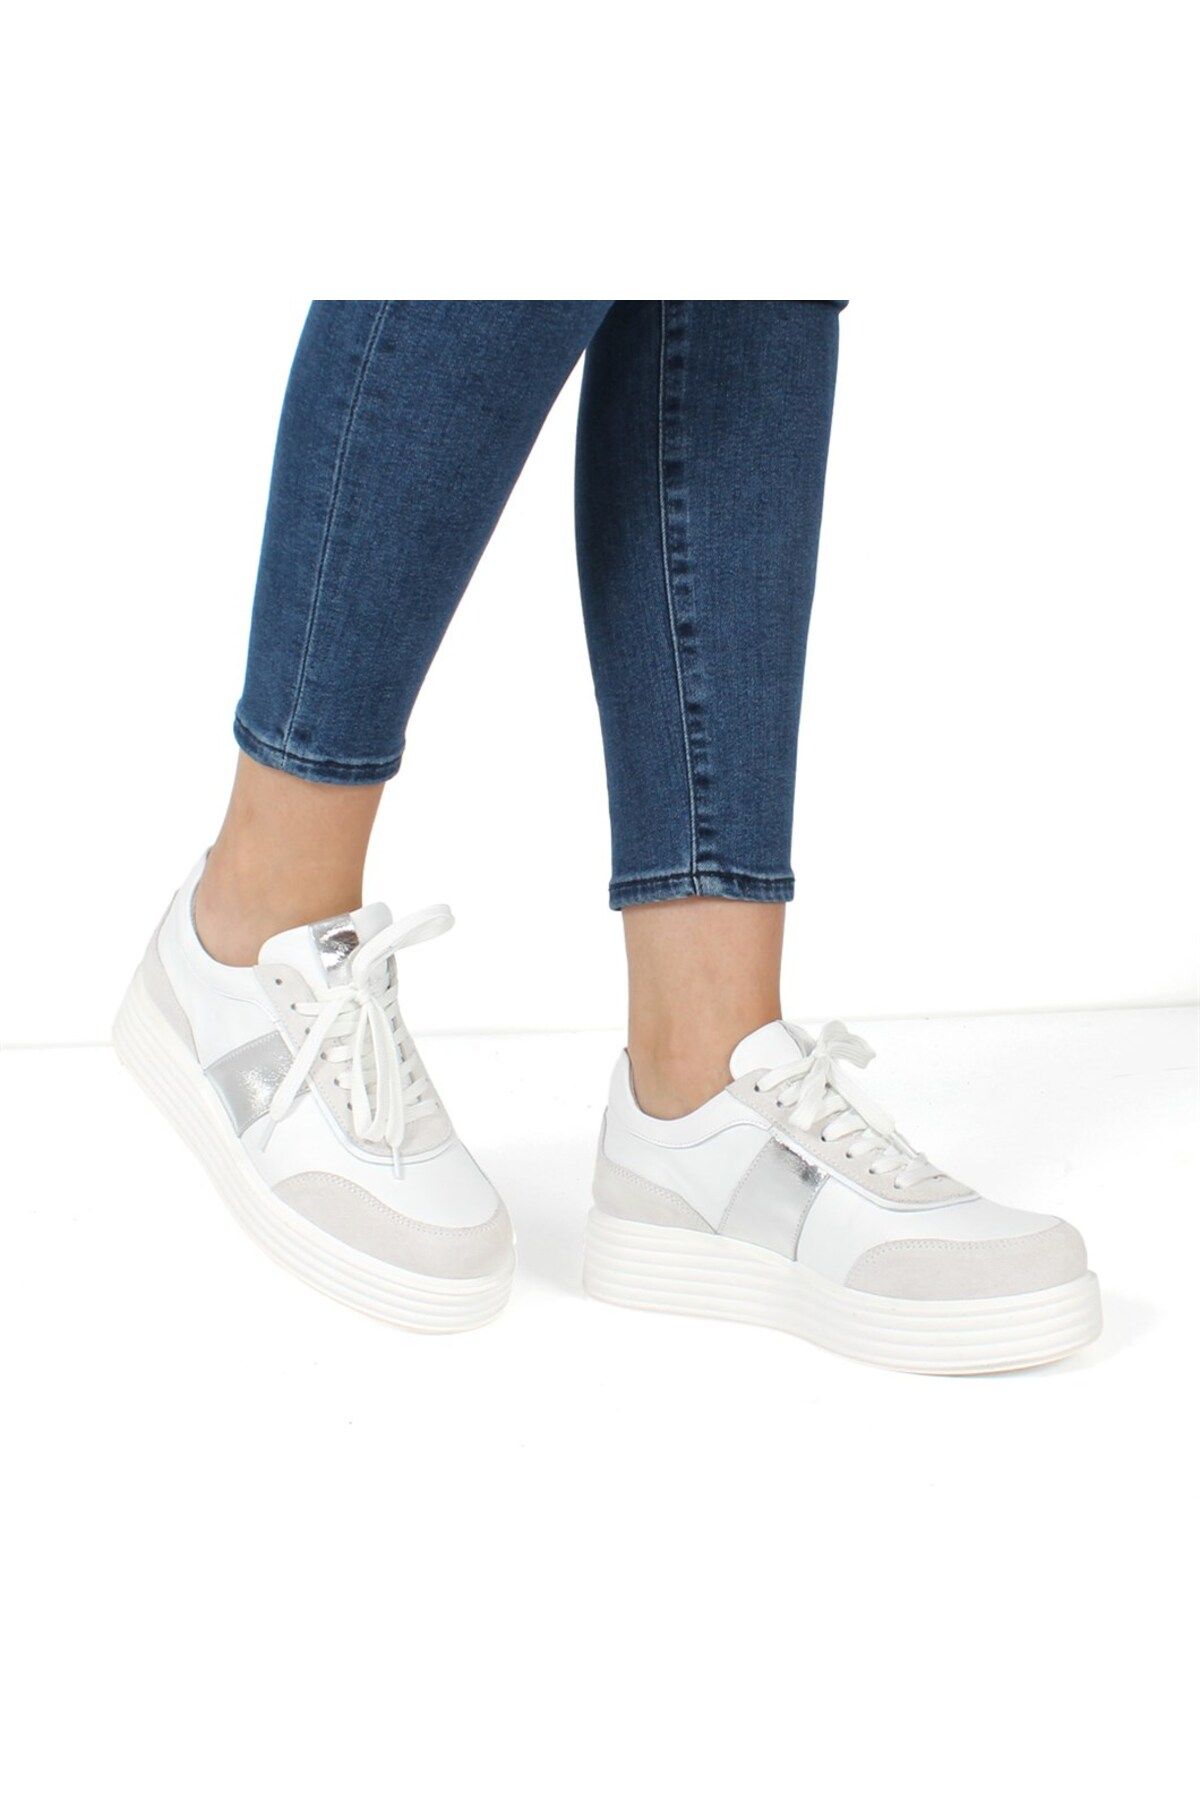 Celal Gültekin Beyaz Deri Ayakkabı Kadın Sneaker 115 20604-16522